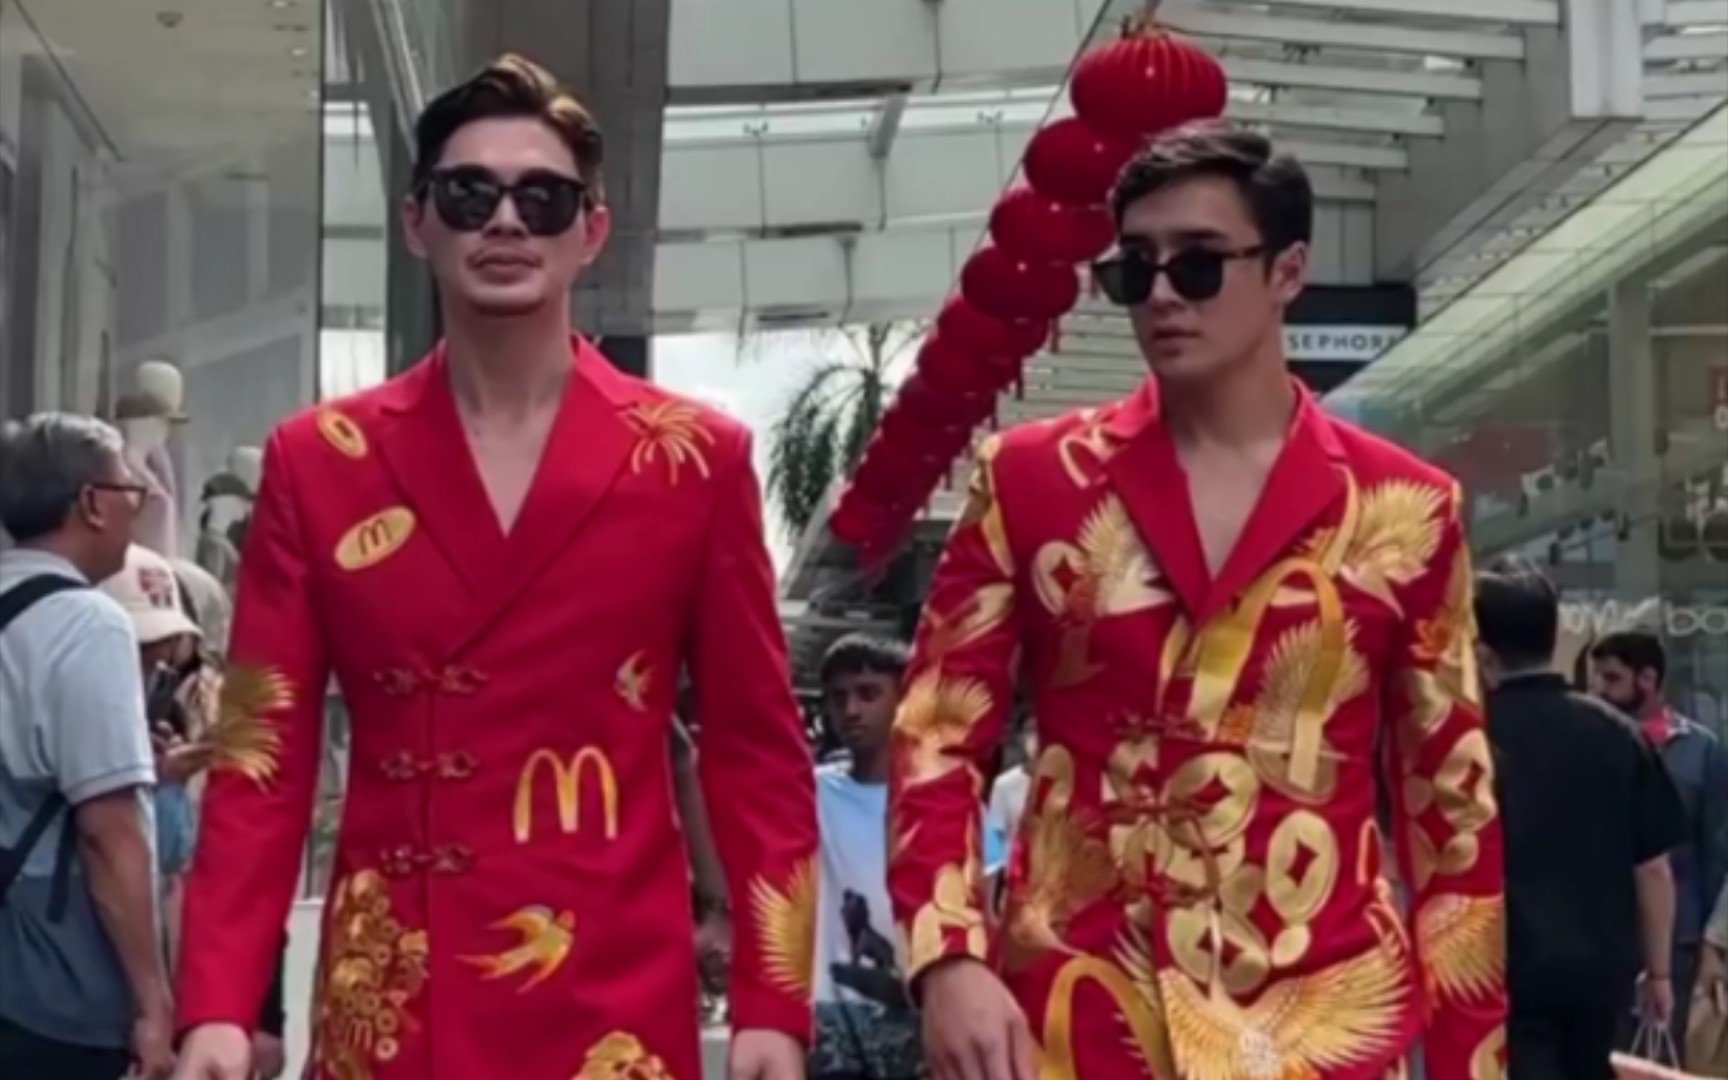 让中式美学走向全世界第十一站＃麦当劳祝你今年金拱门